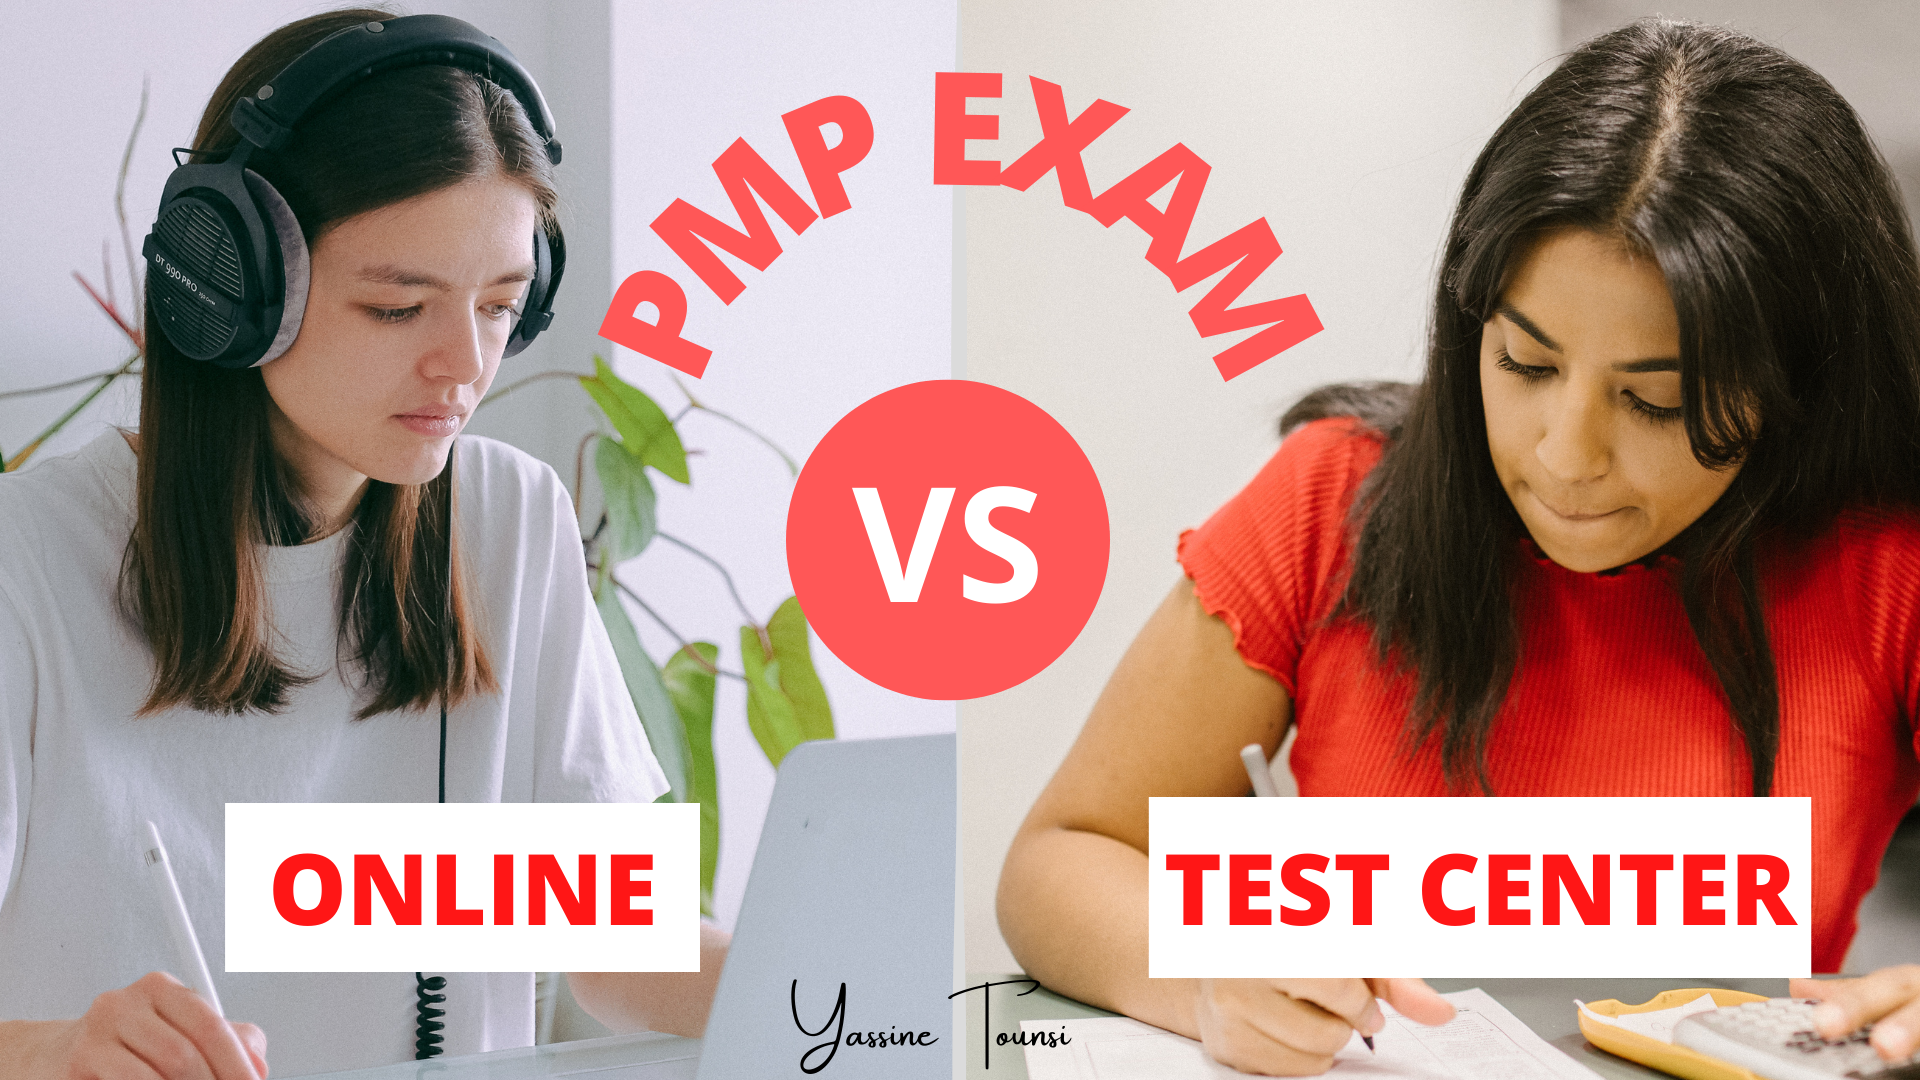 PMP exam: Online vs Test Center